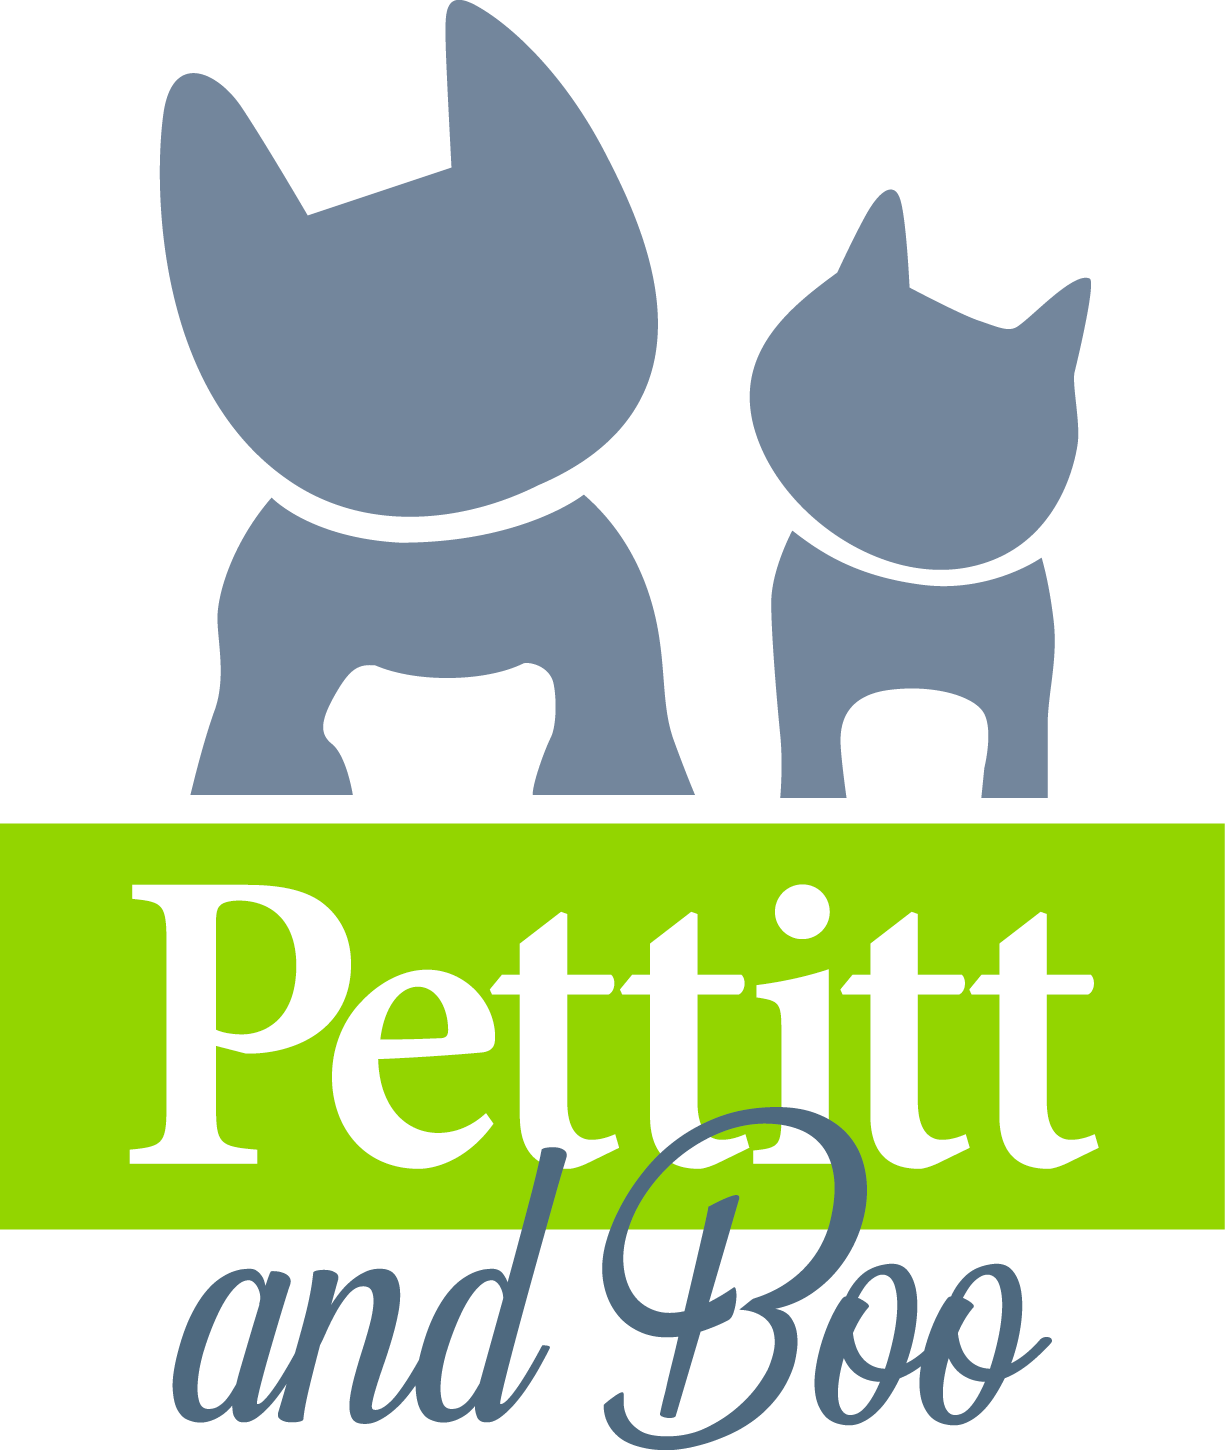 Pettitt and Boo